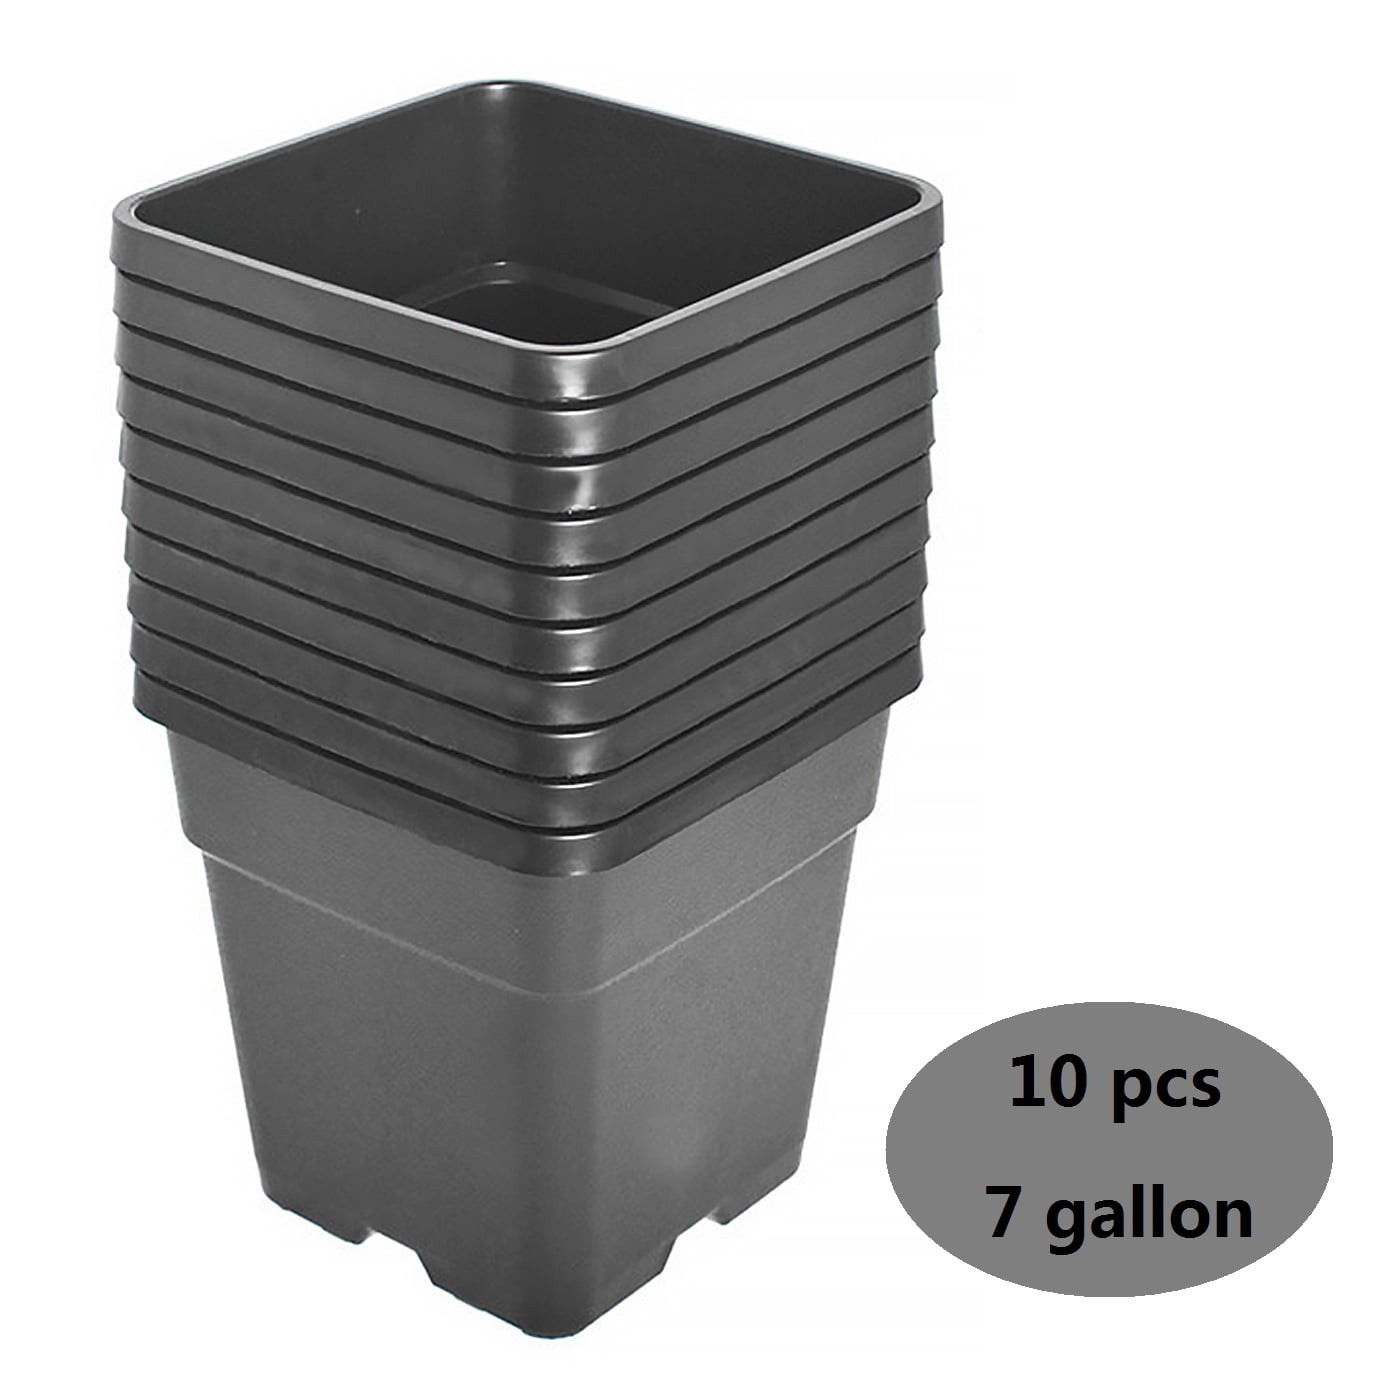 Details about   5/10PCS Re-usable Square Nursery Pot 10 Gallon Plastic Grow Pots Plant 5/10Pack 